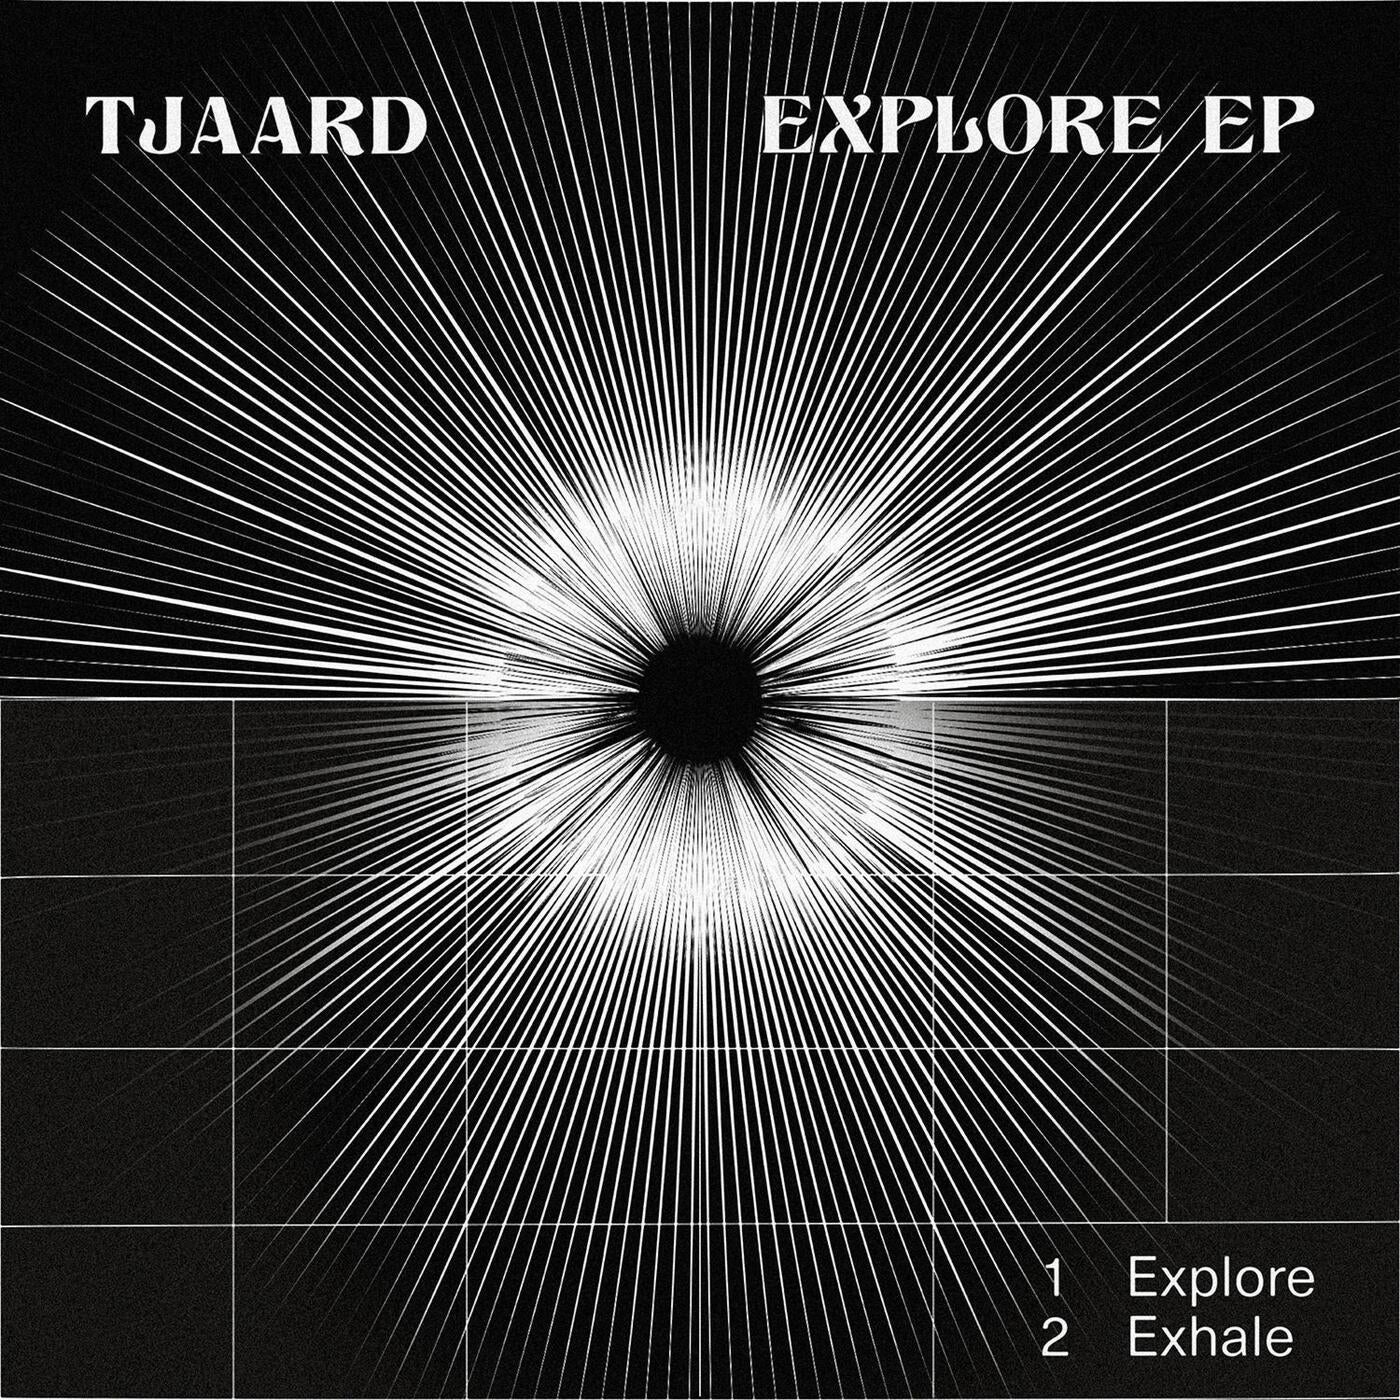 Explore EP